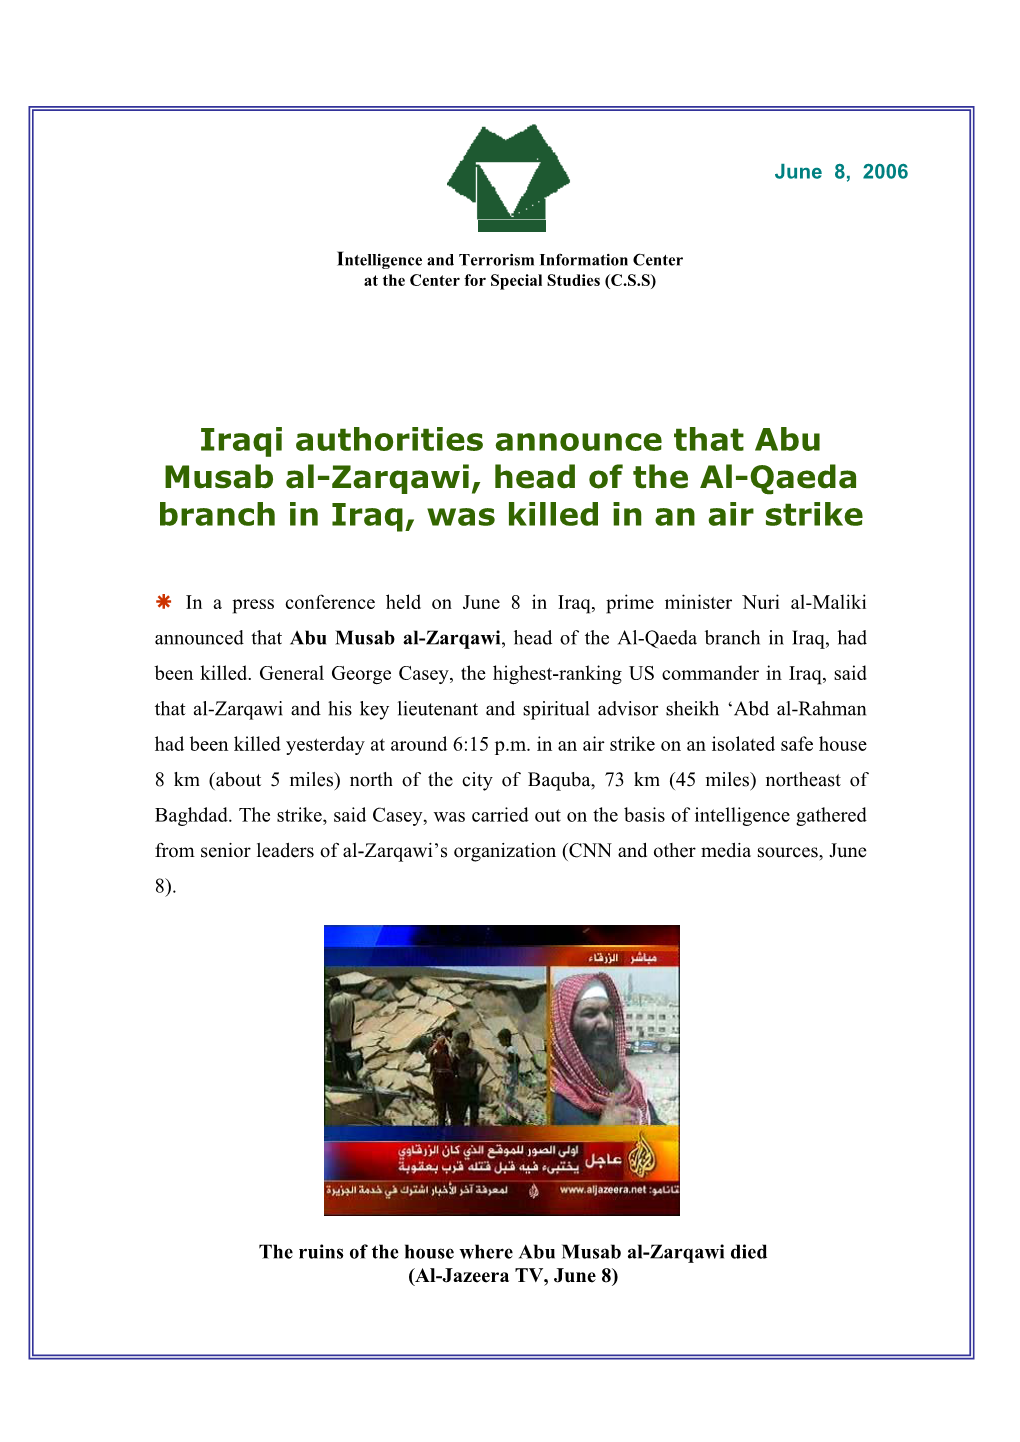 Abu Musab Al-Zarqawi, Head of the Al-Qaeda Branch in Iraq, Was Killed in an Air Strike